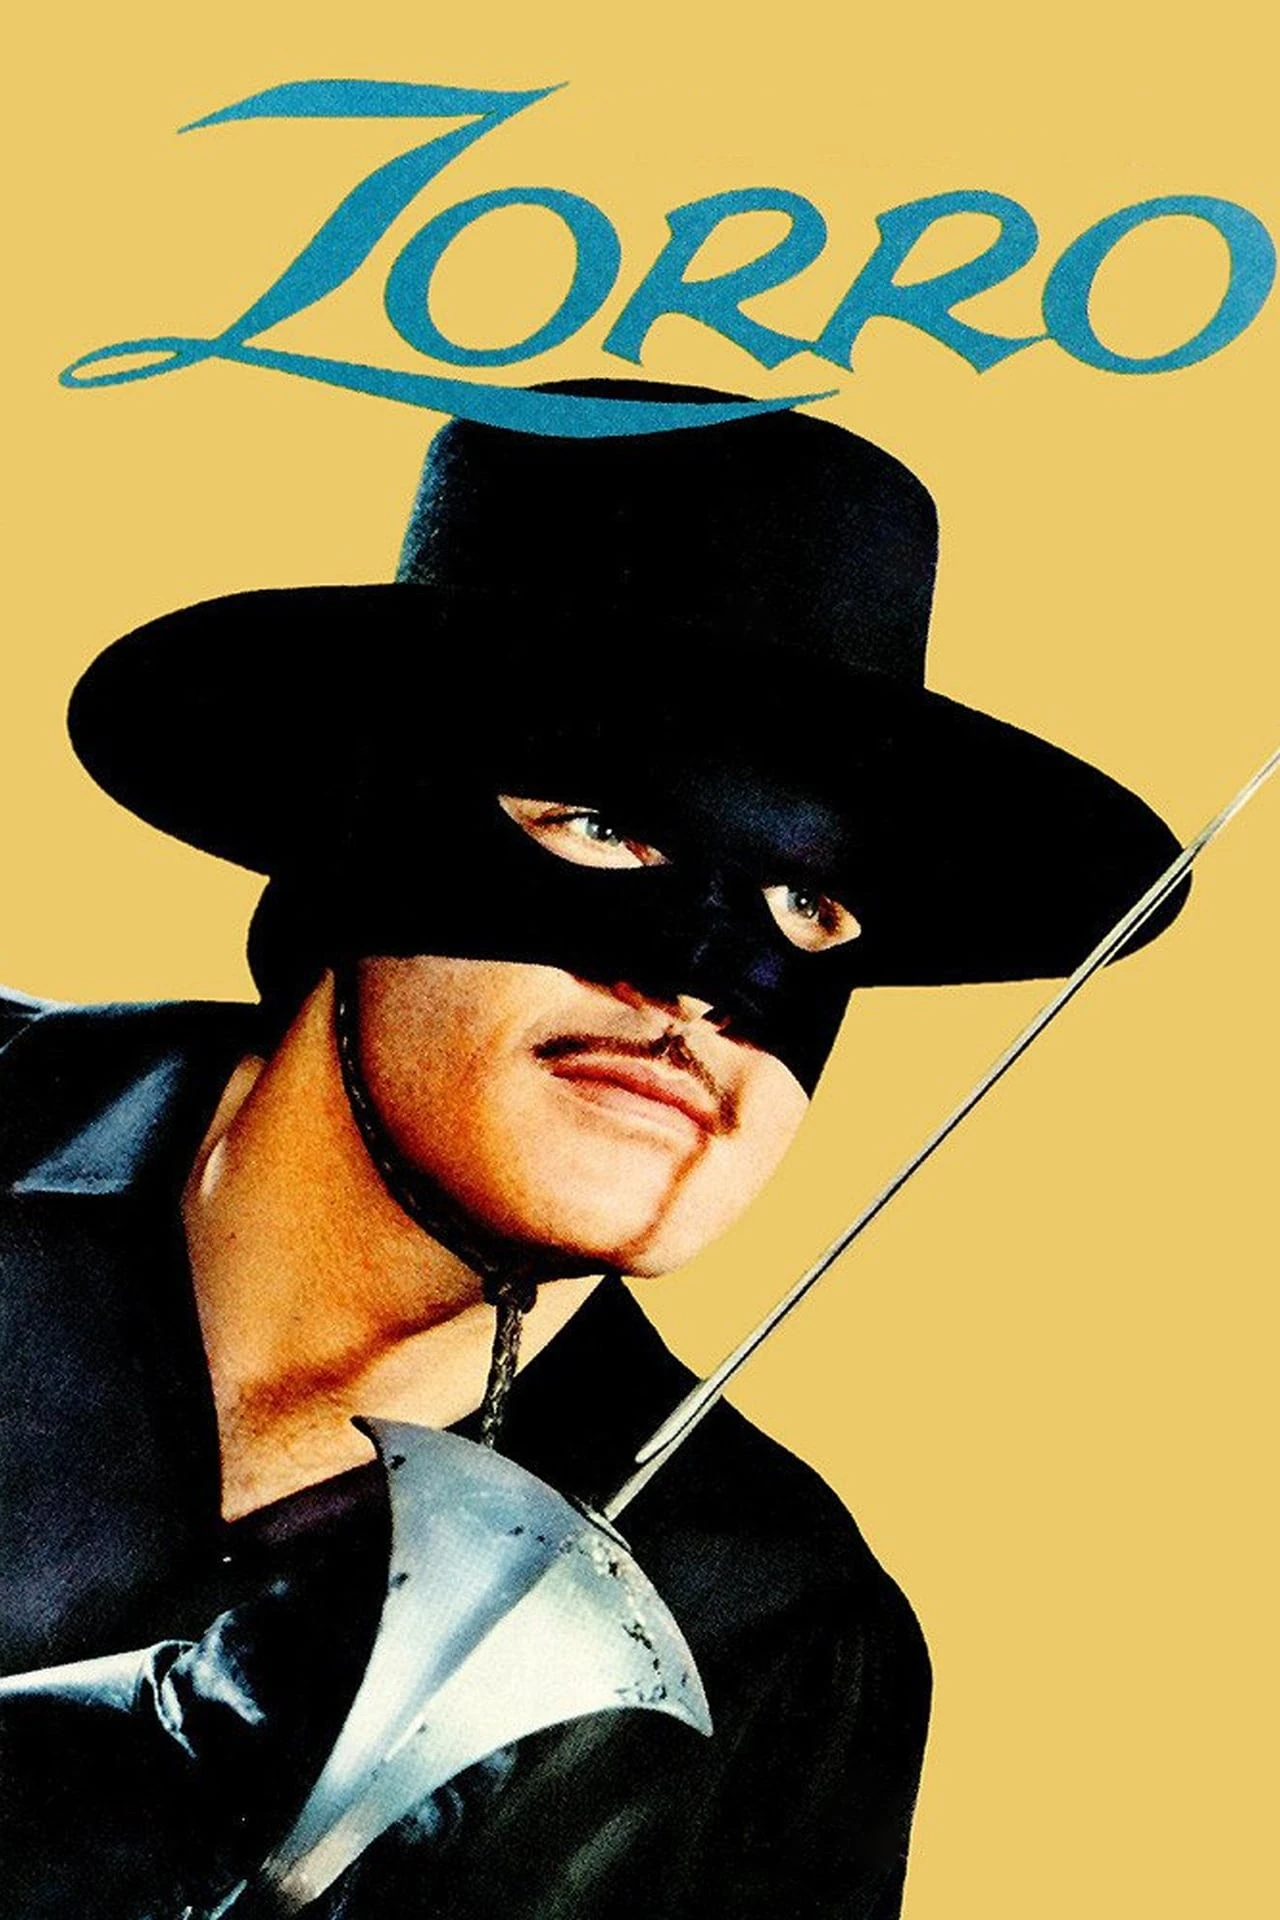 Zorro musique pour dressage musique pour dressage